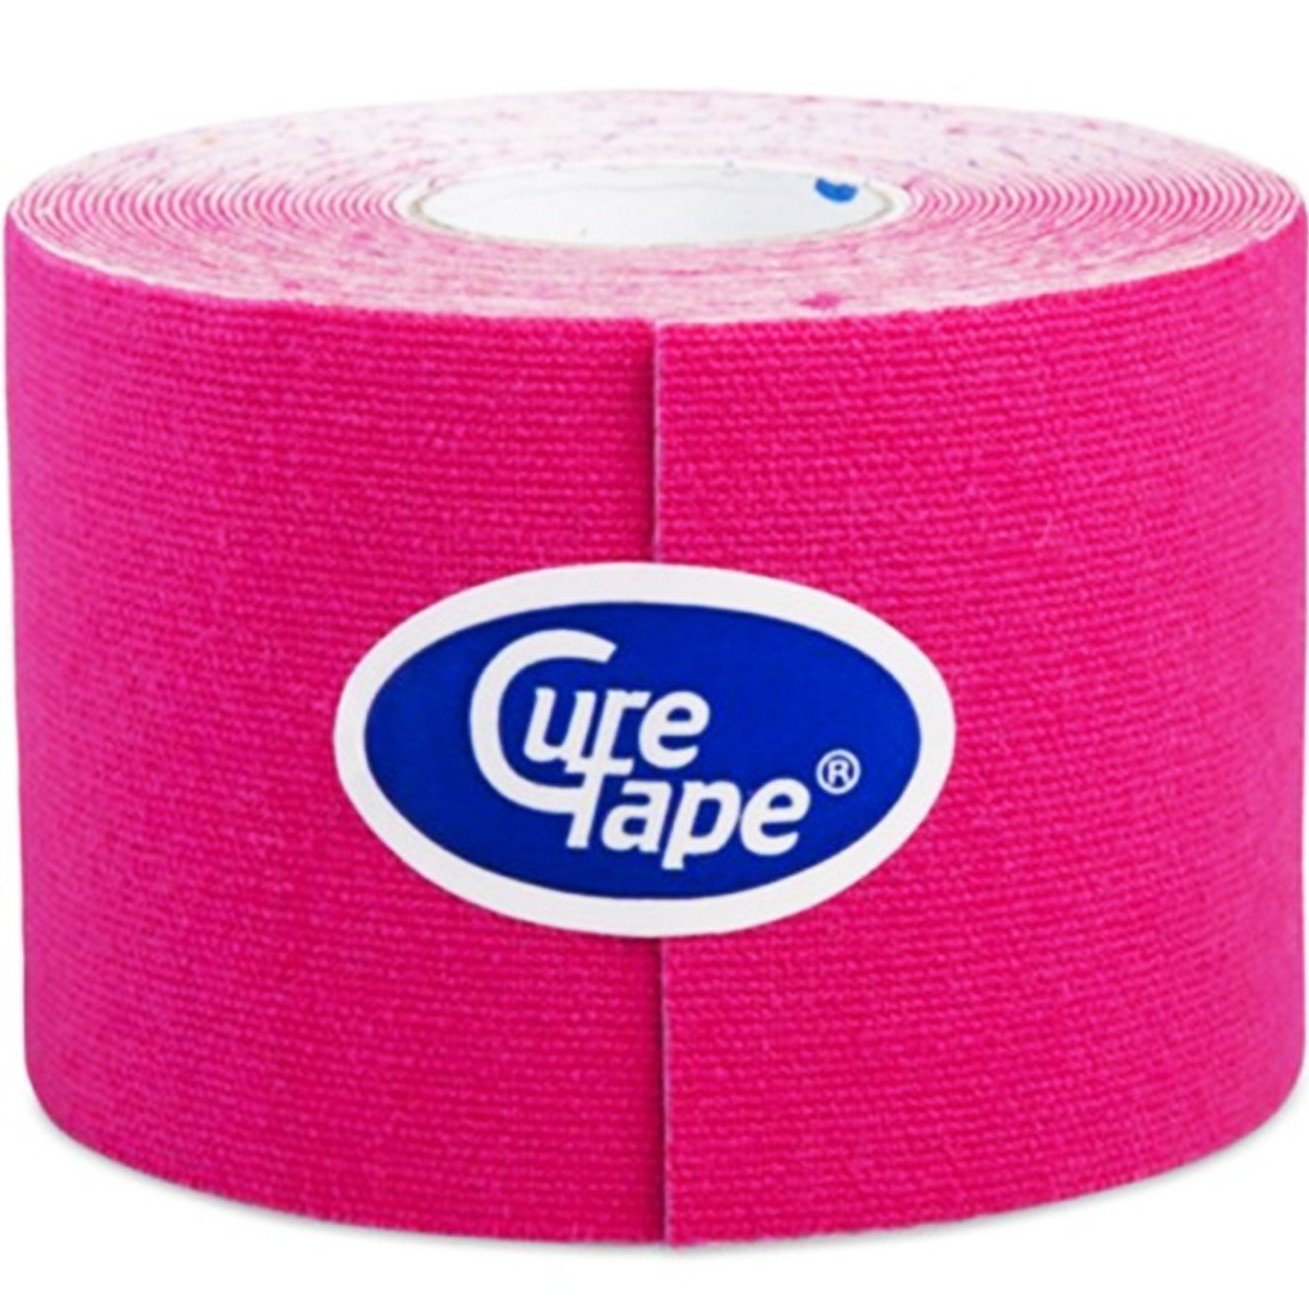 CureTape Roze